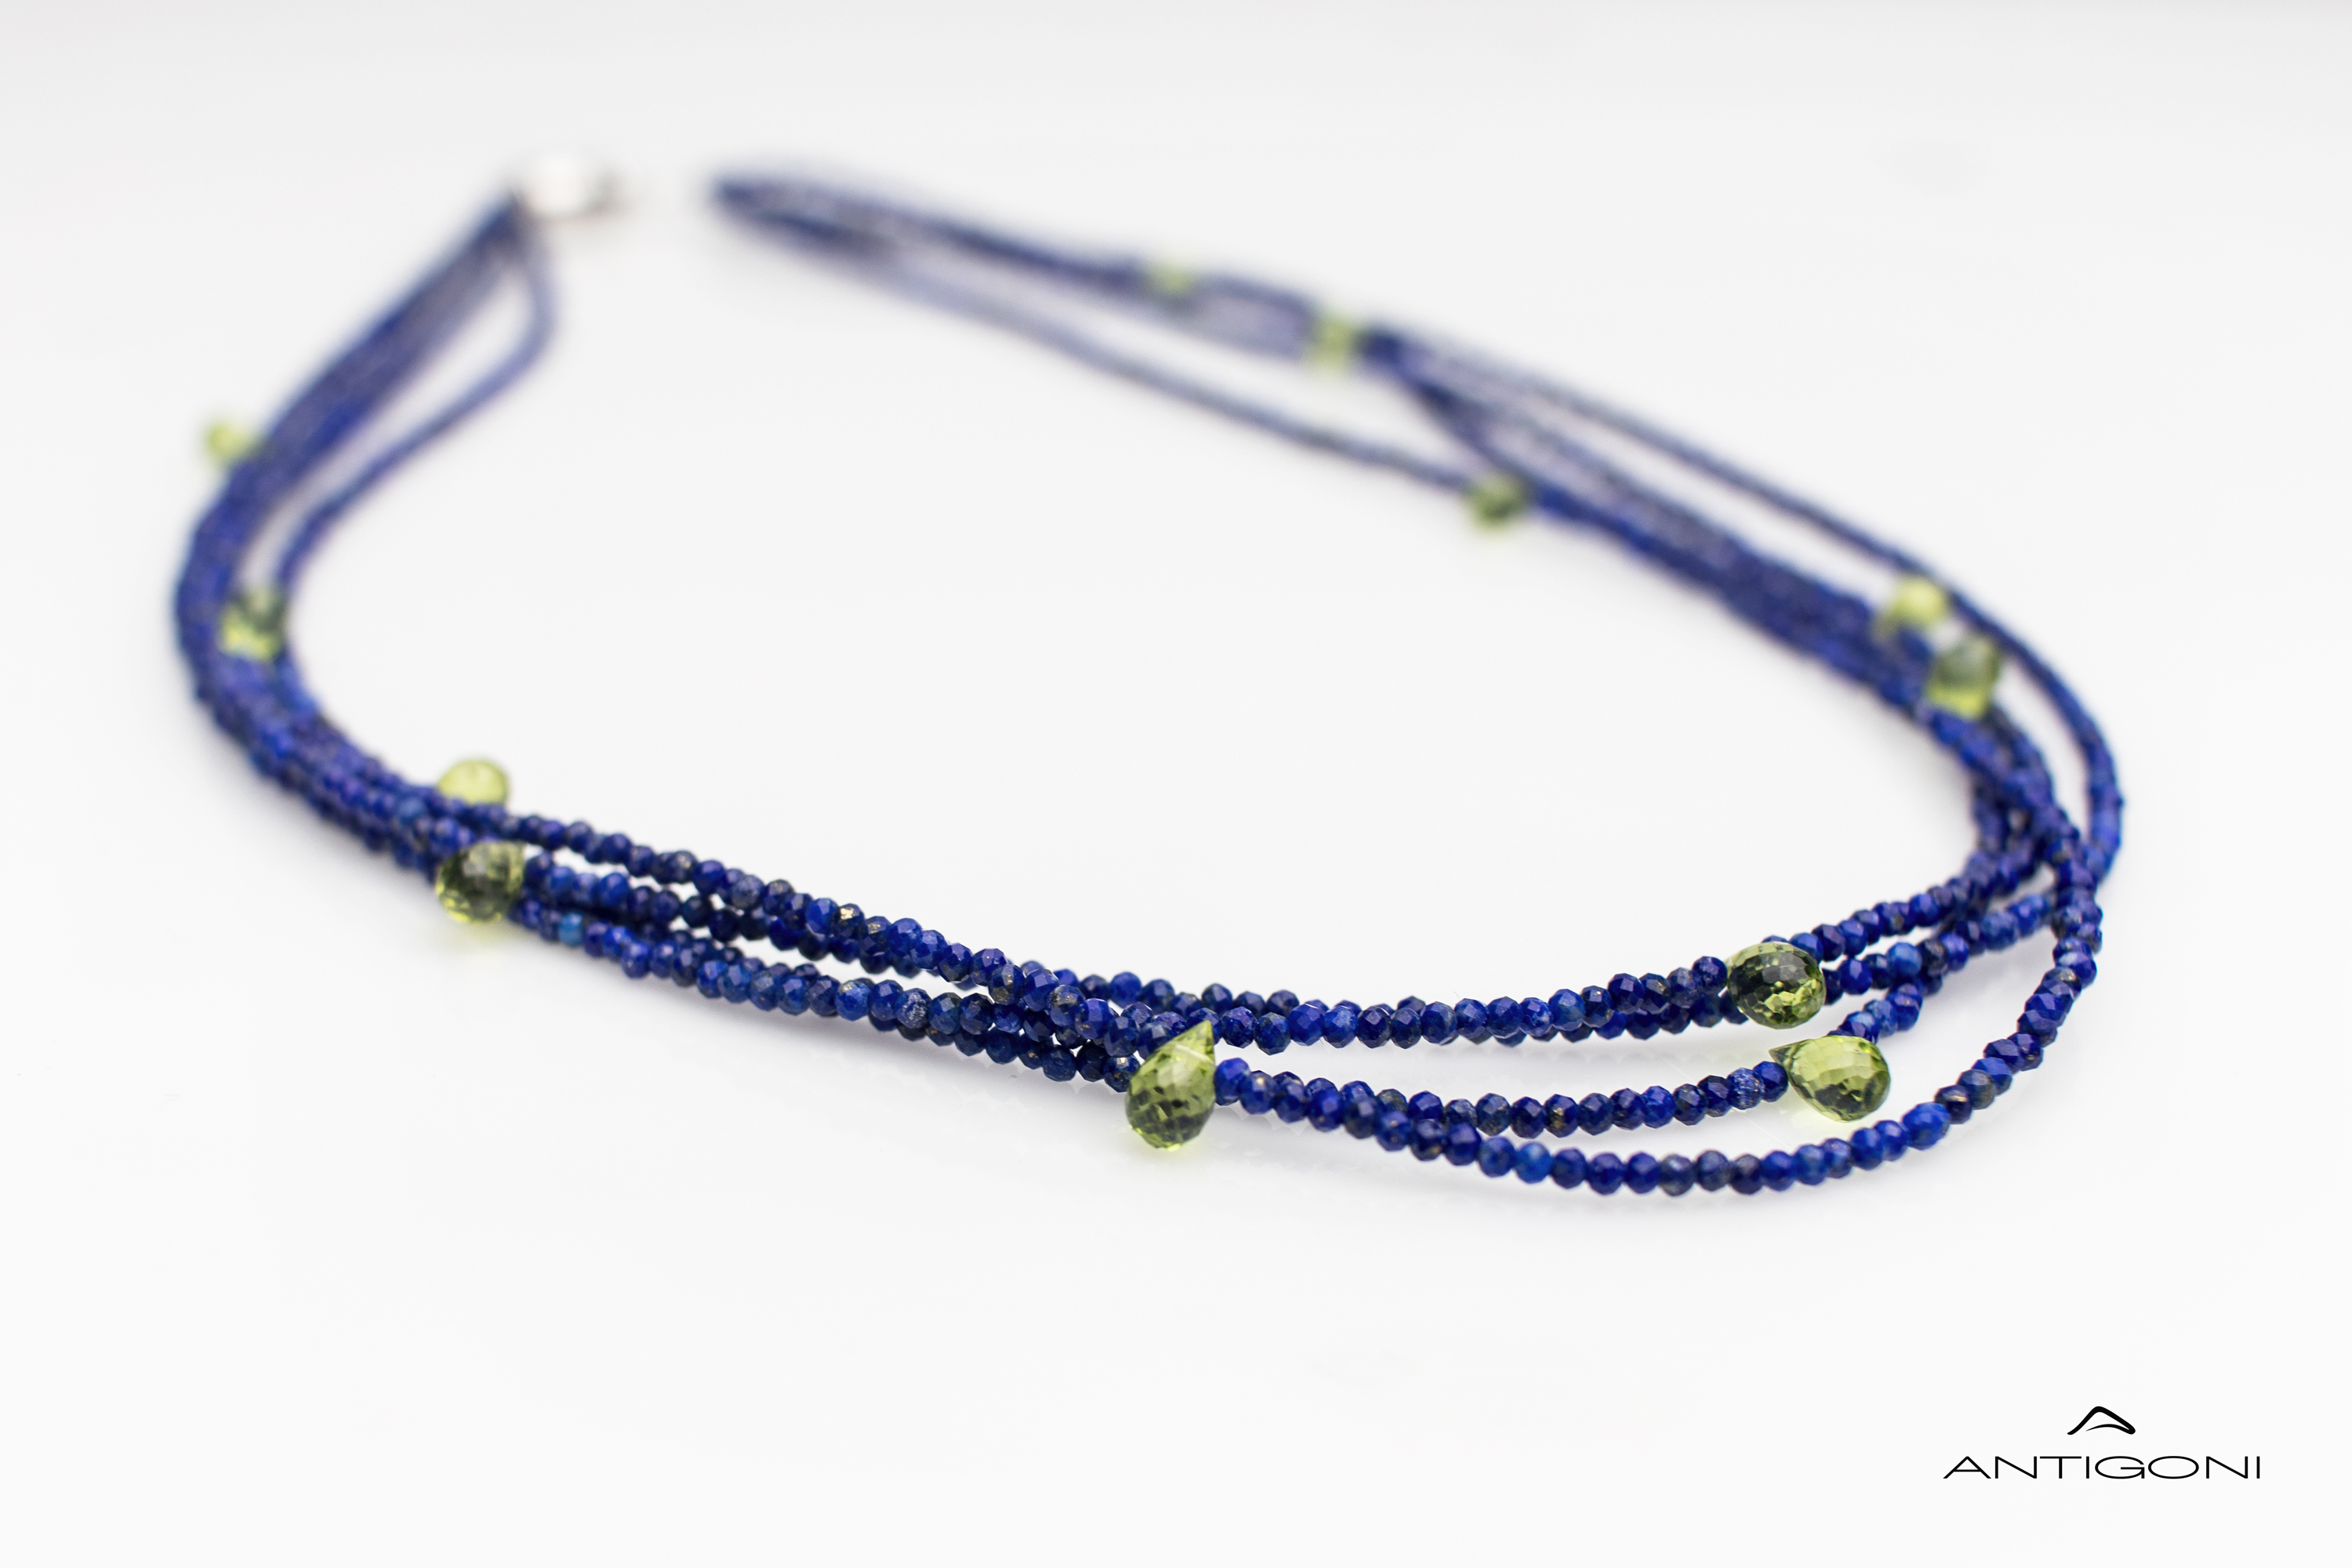 Lapis Lazuli necklace with peridot